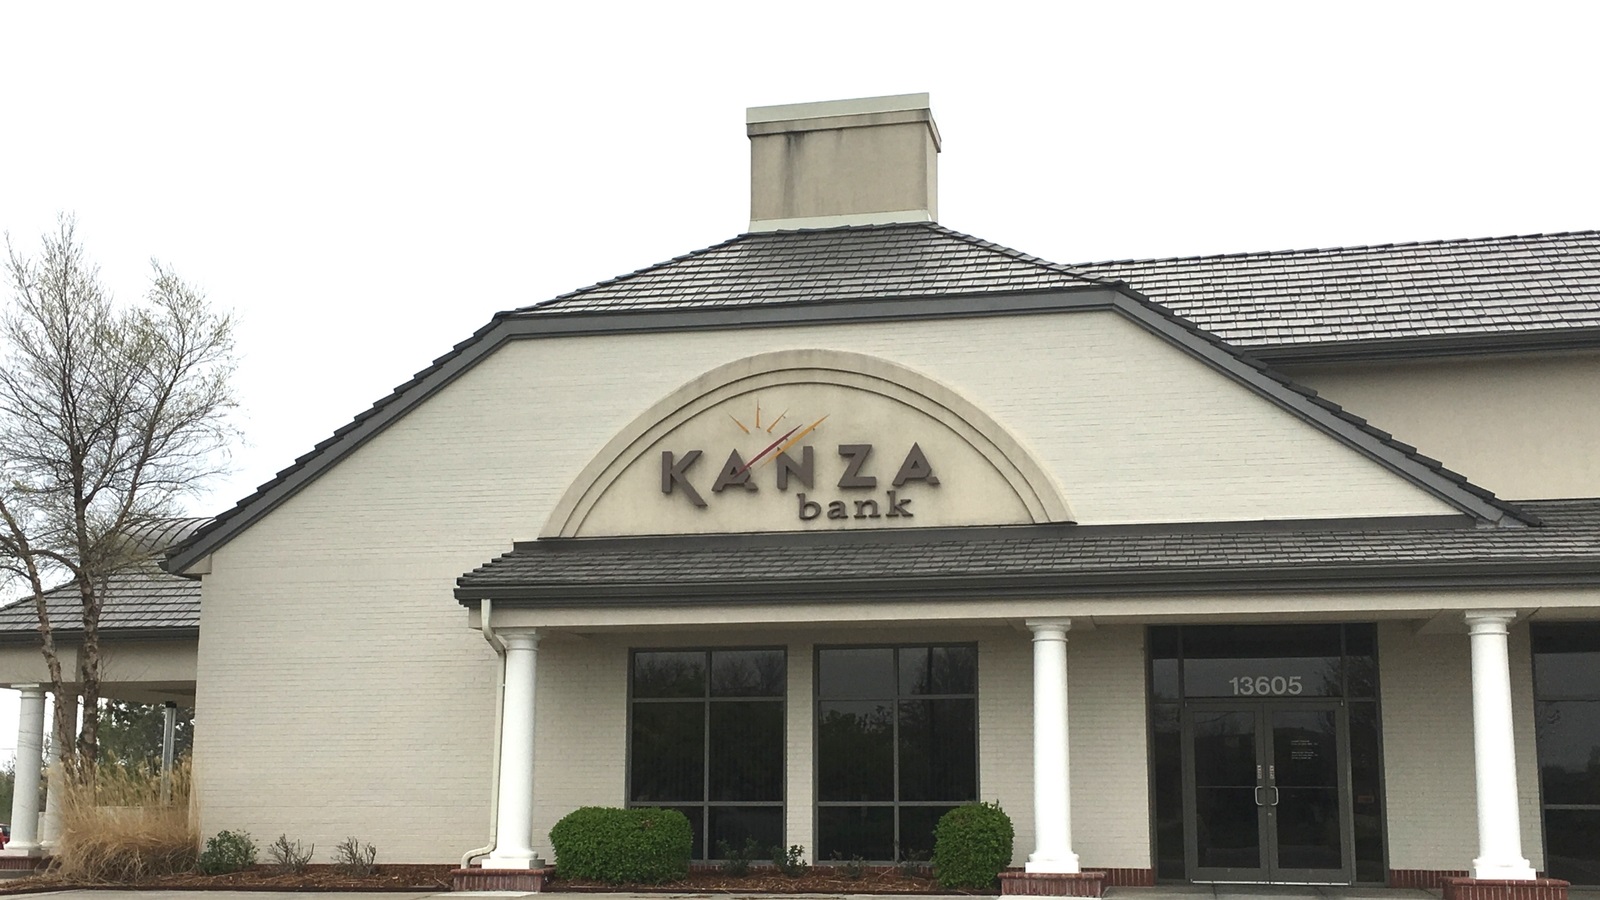 KANZA Bank